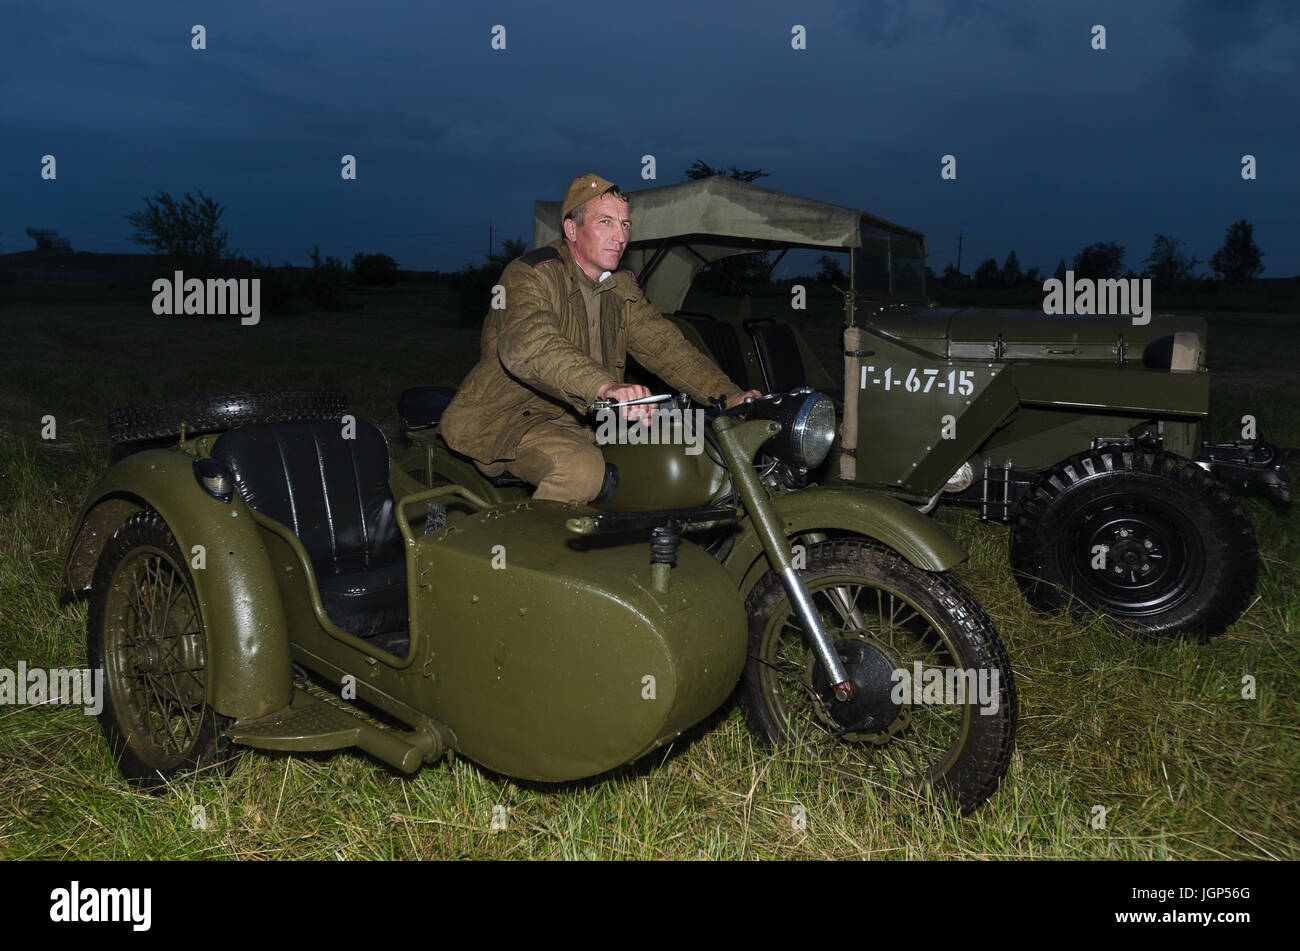 Festival der Militärgeschichte des Russlands des XX. Jahrhunderts. Togliatti, 7. Juli 2017. Soldat der Roten Armee auf einem Motorrad. Stockfoto